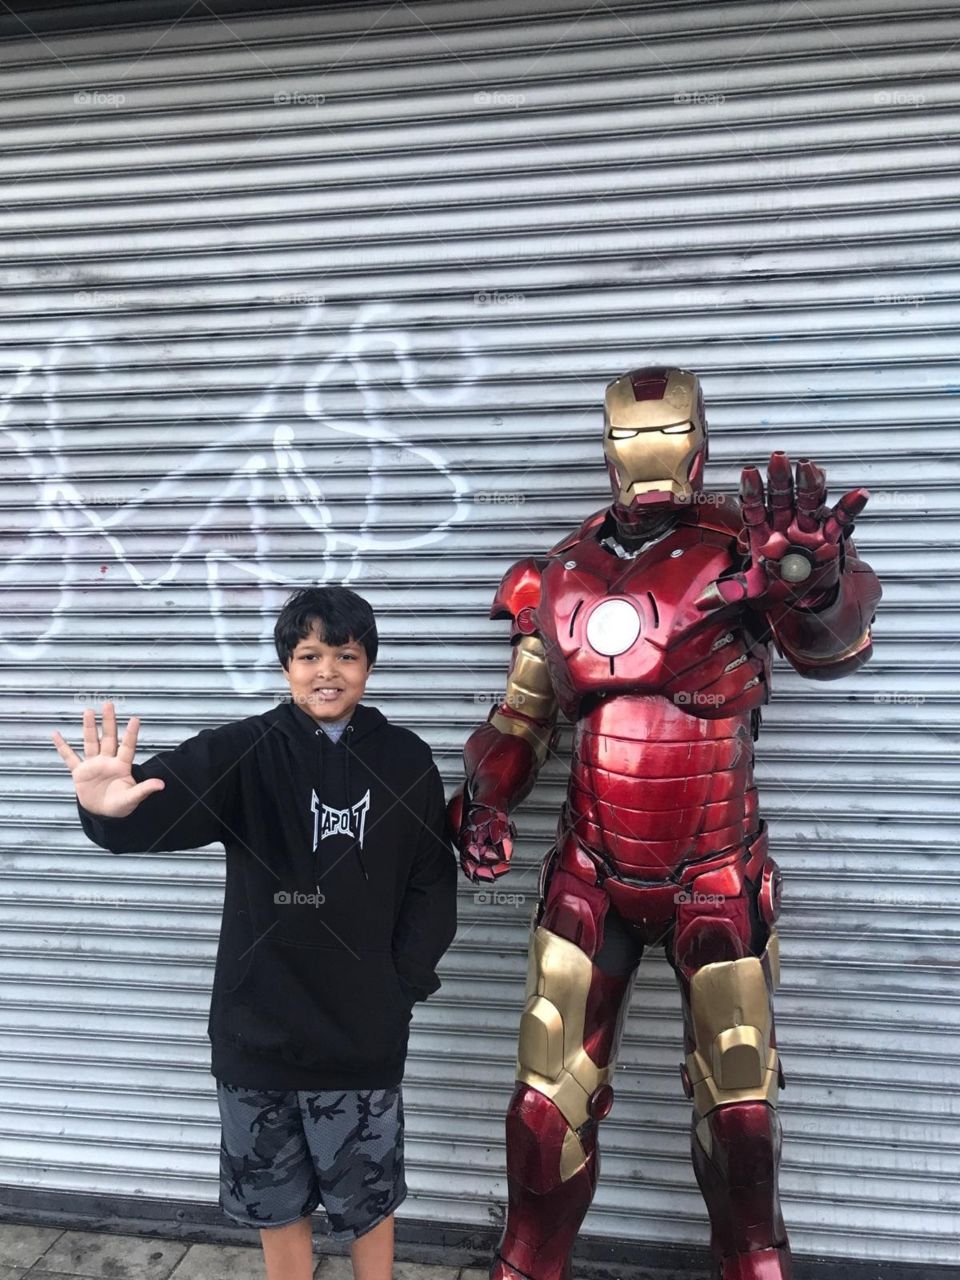 marvel hero and kid